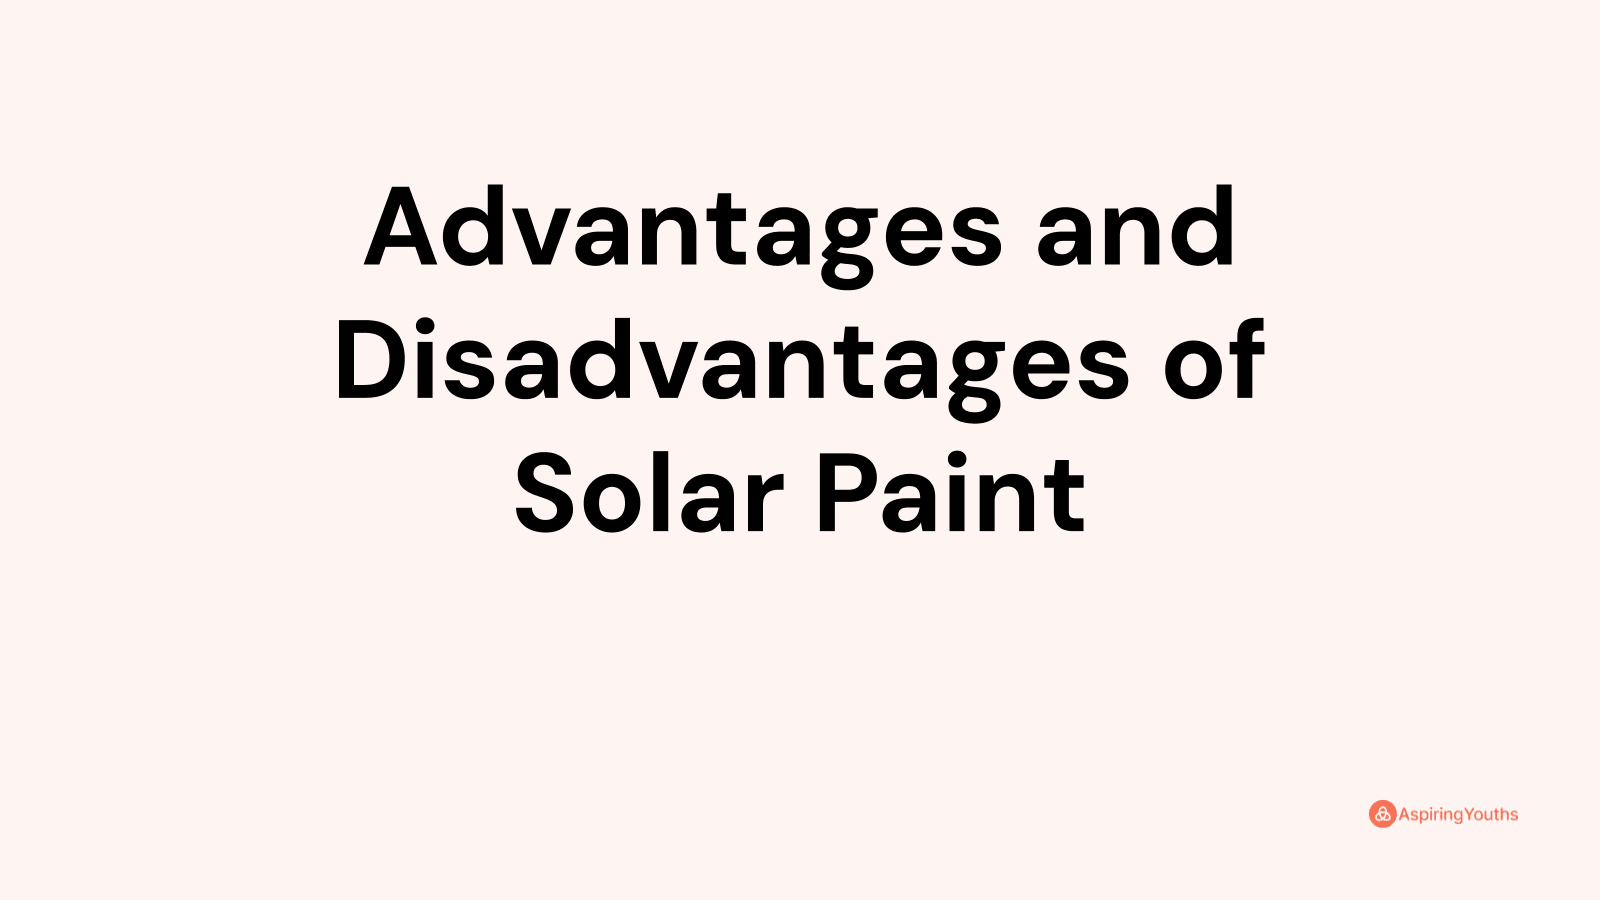 Advantages and disadvantages of Solar Paint